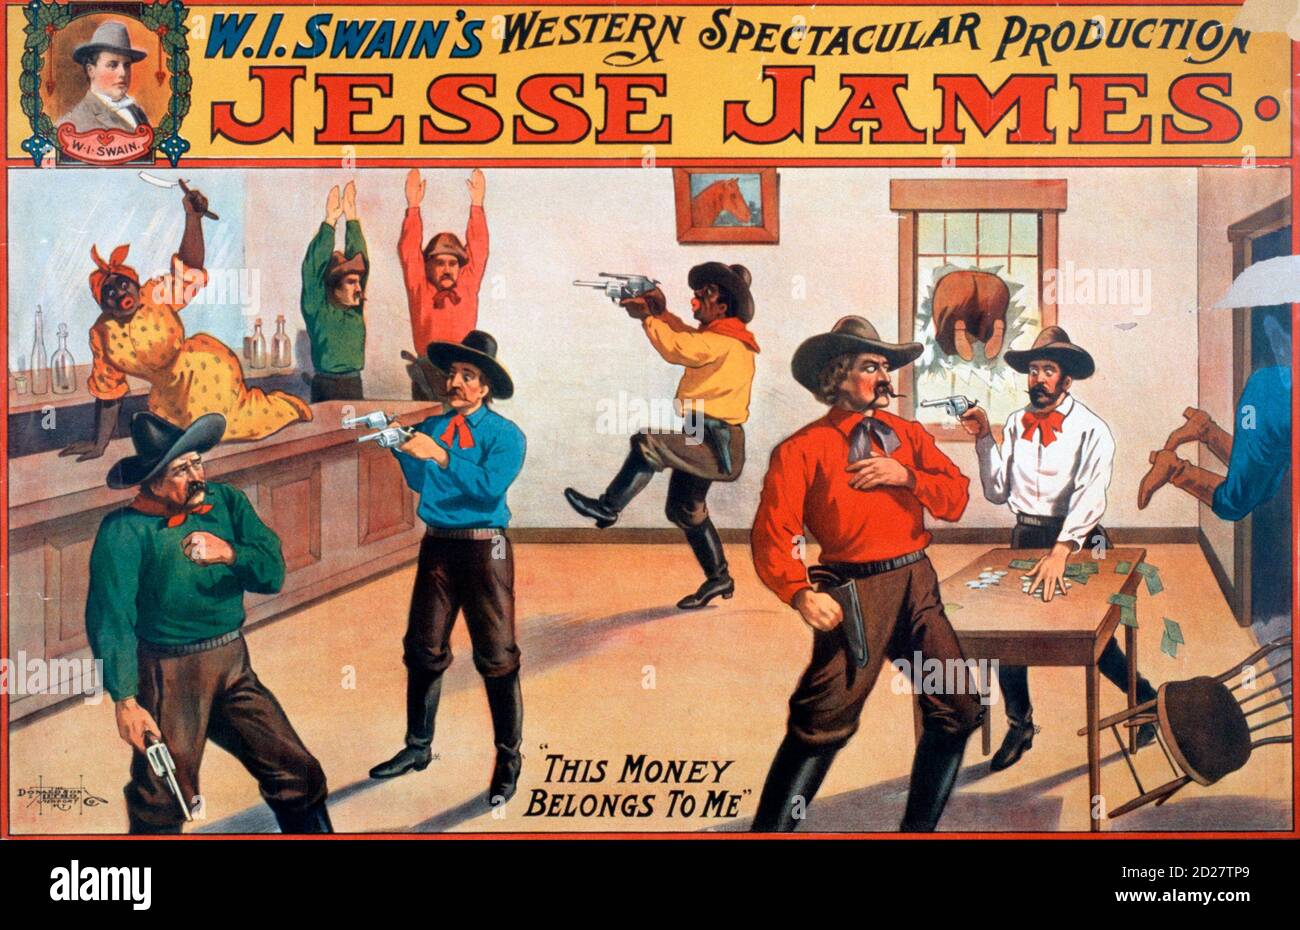 Theaterplakat für W.I. Swains spektakuläre Western-Produktion mit Jesse James, 1880er Stockfoto